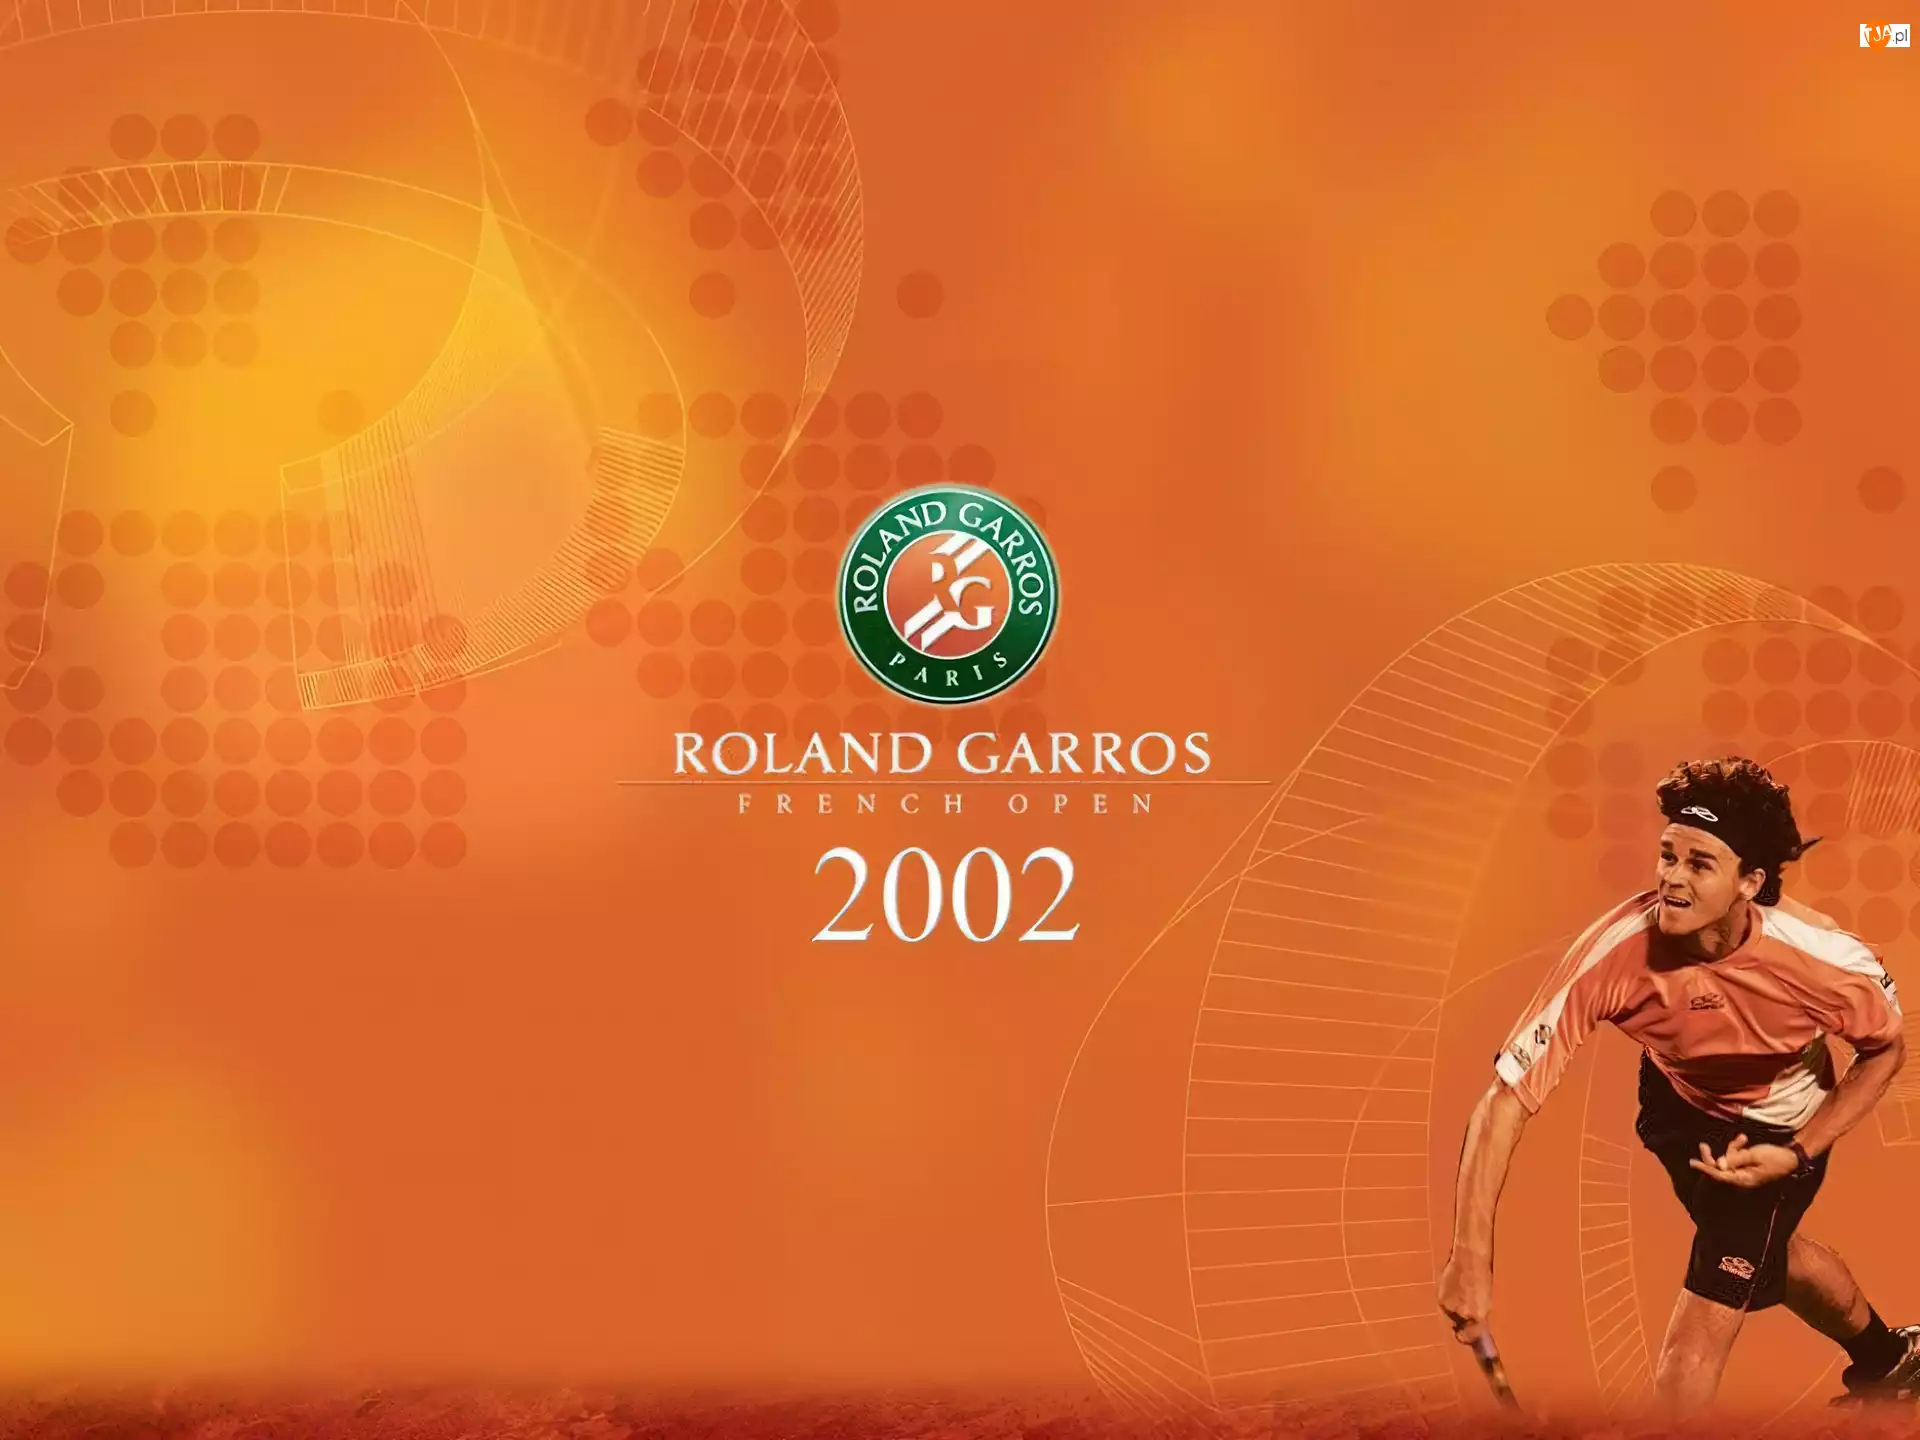 Tennis, ROLAND GARROS